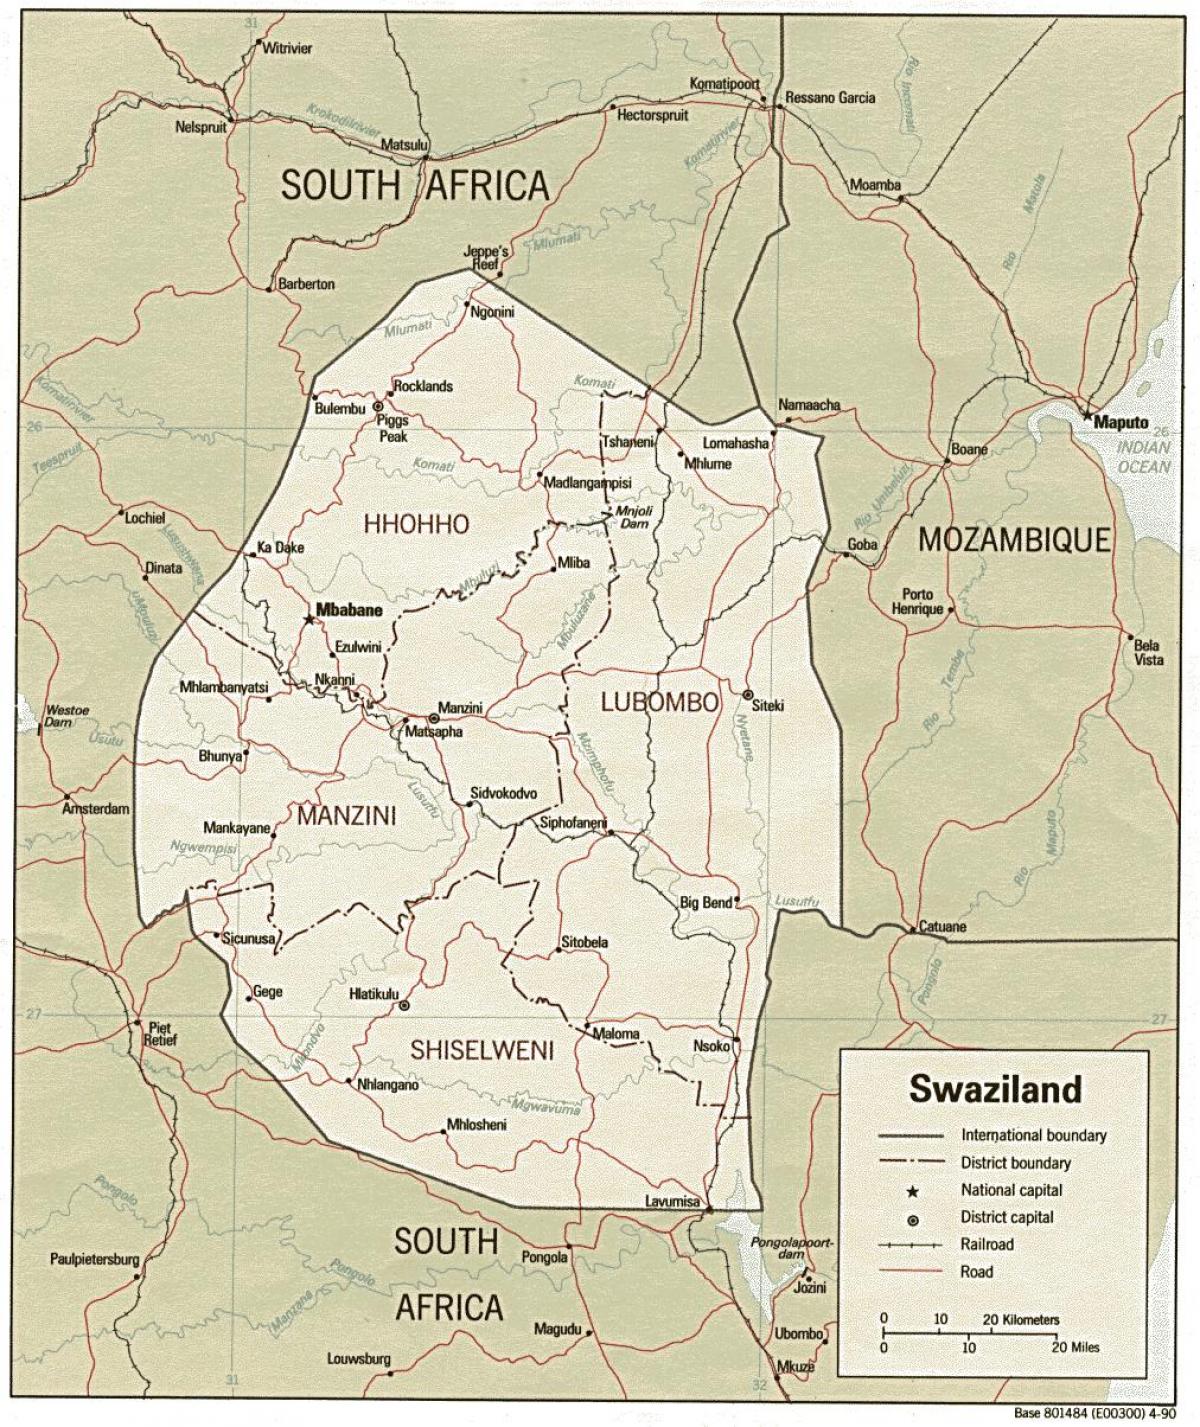 Քարտեզ ситеки Սվազիլենդի